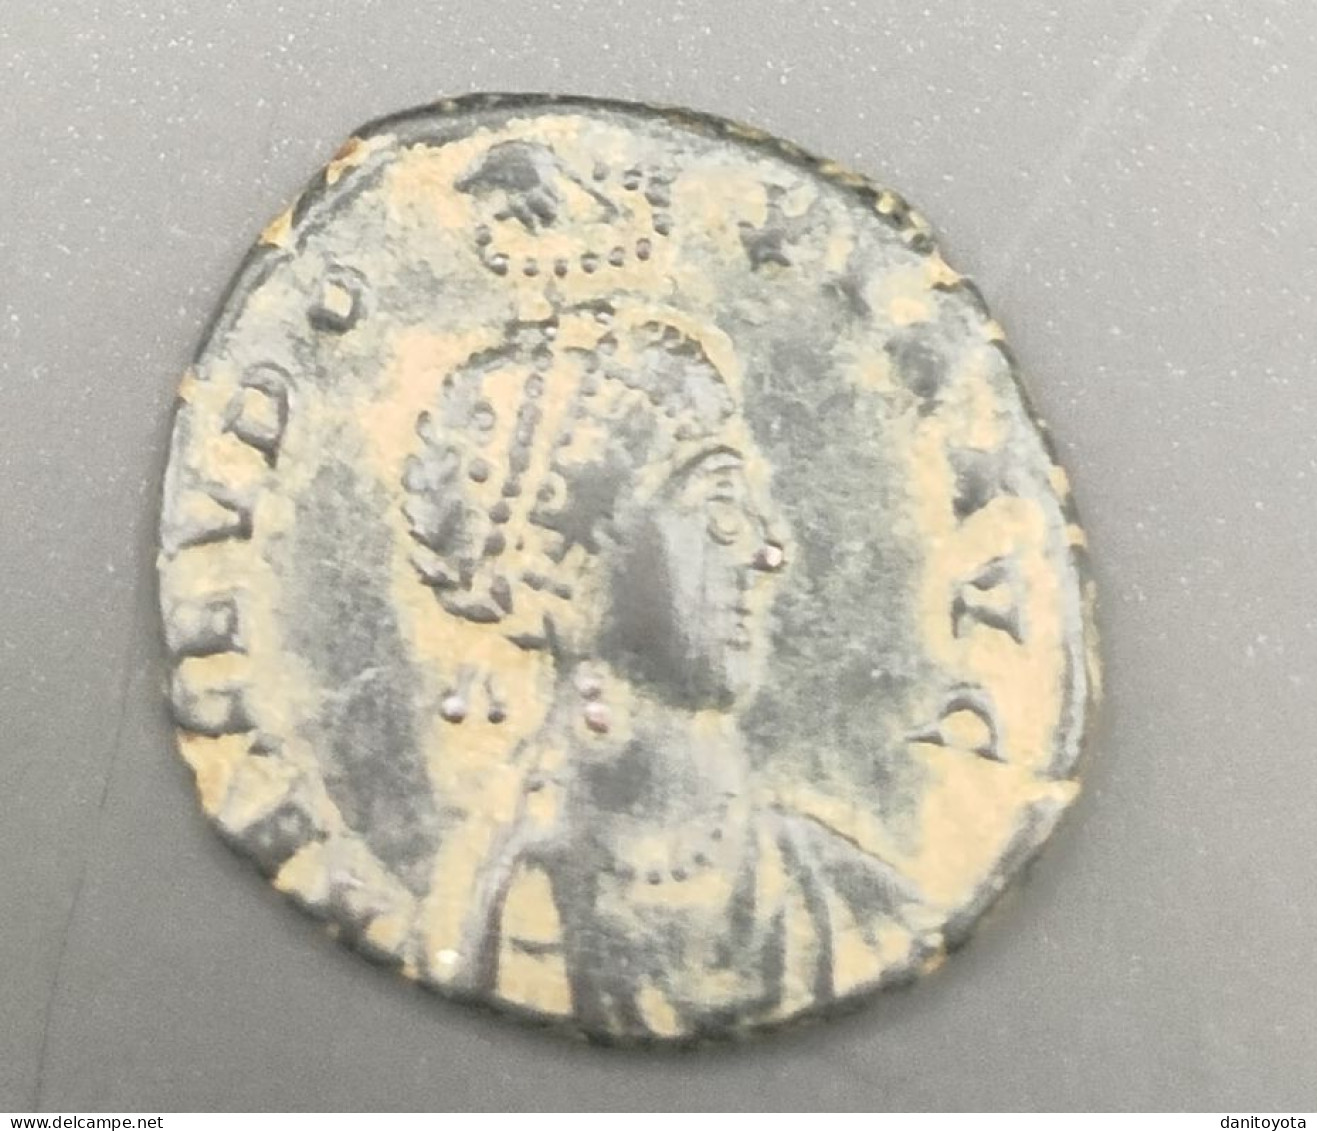 IMPERIO ROMANO. AÑO 401/403 D.C. AELIA EUDOXIA. NUMMUS. PESO 2,44 GR.  REF A/F - La Caduta Dell'Impero Romano (363 / 476)